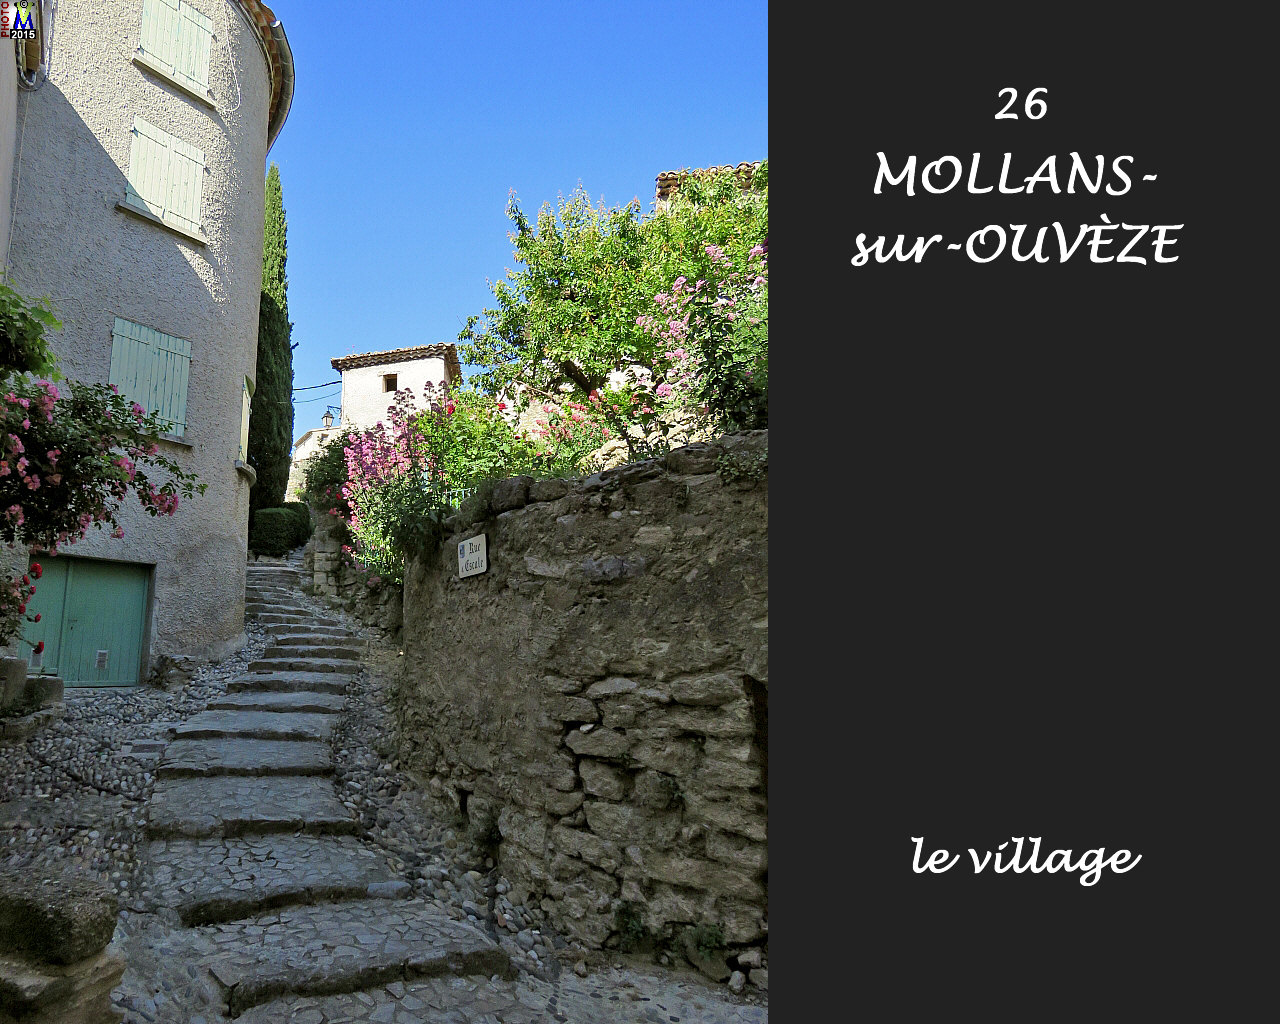 26MOLLANS-OUVEZE_village_106.jpg